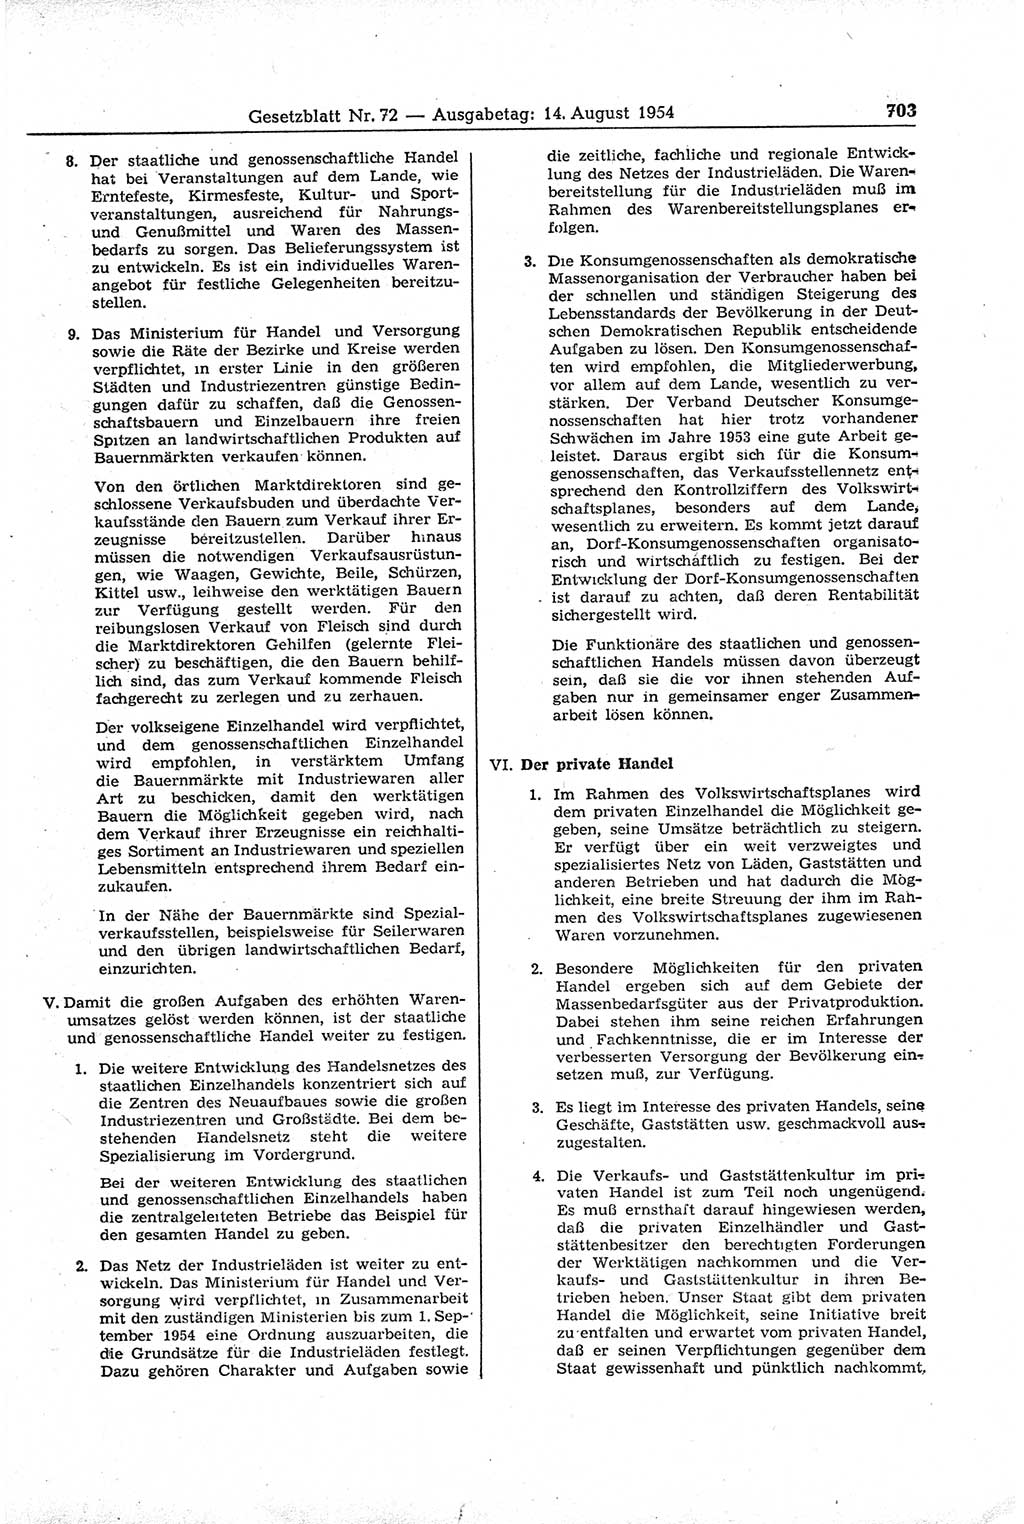 Gesetzblatt (GBl.) der Deutschen Demokratischen Republik (DDR) 1954, Seite 703 (GBl. DDR 1954, S. 703)